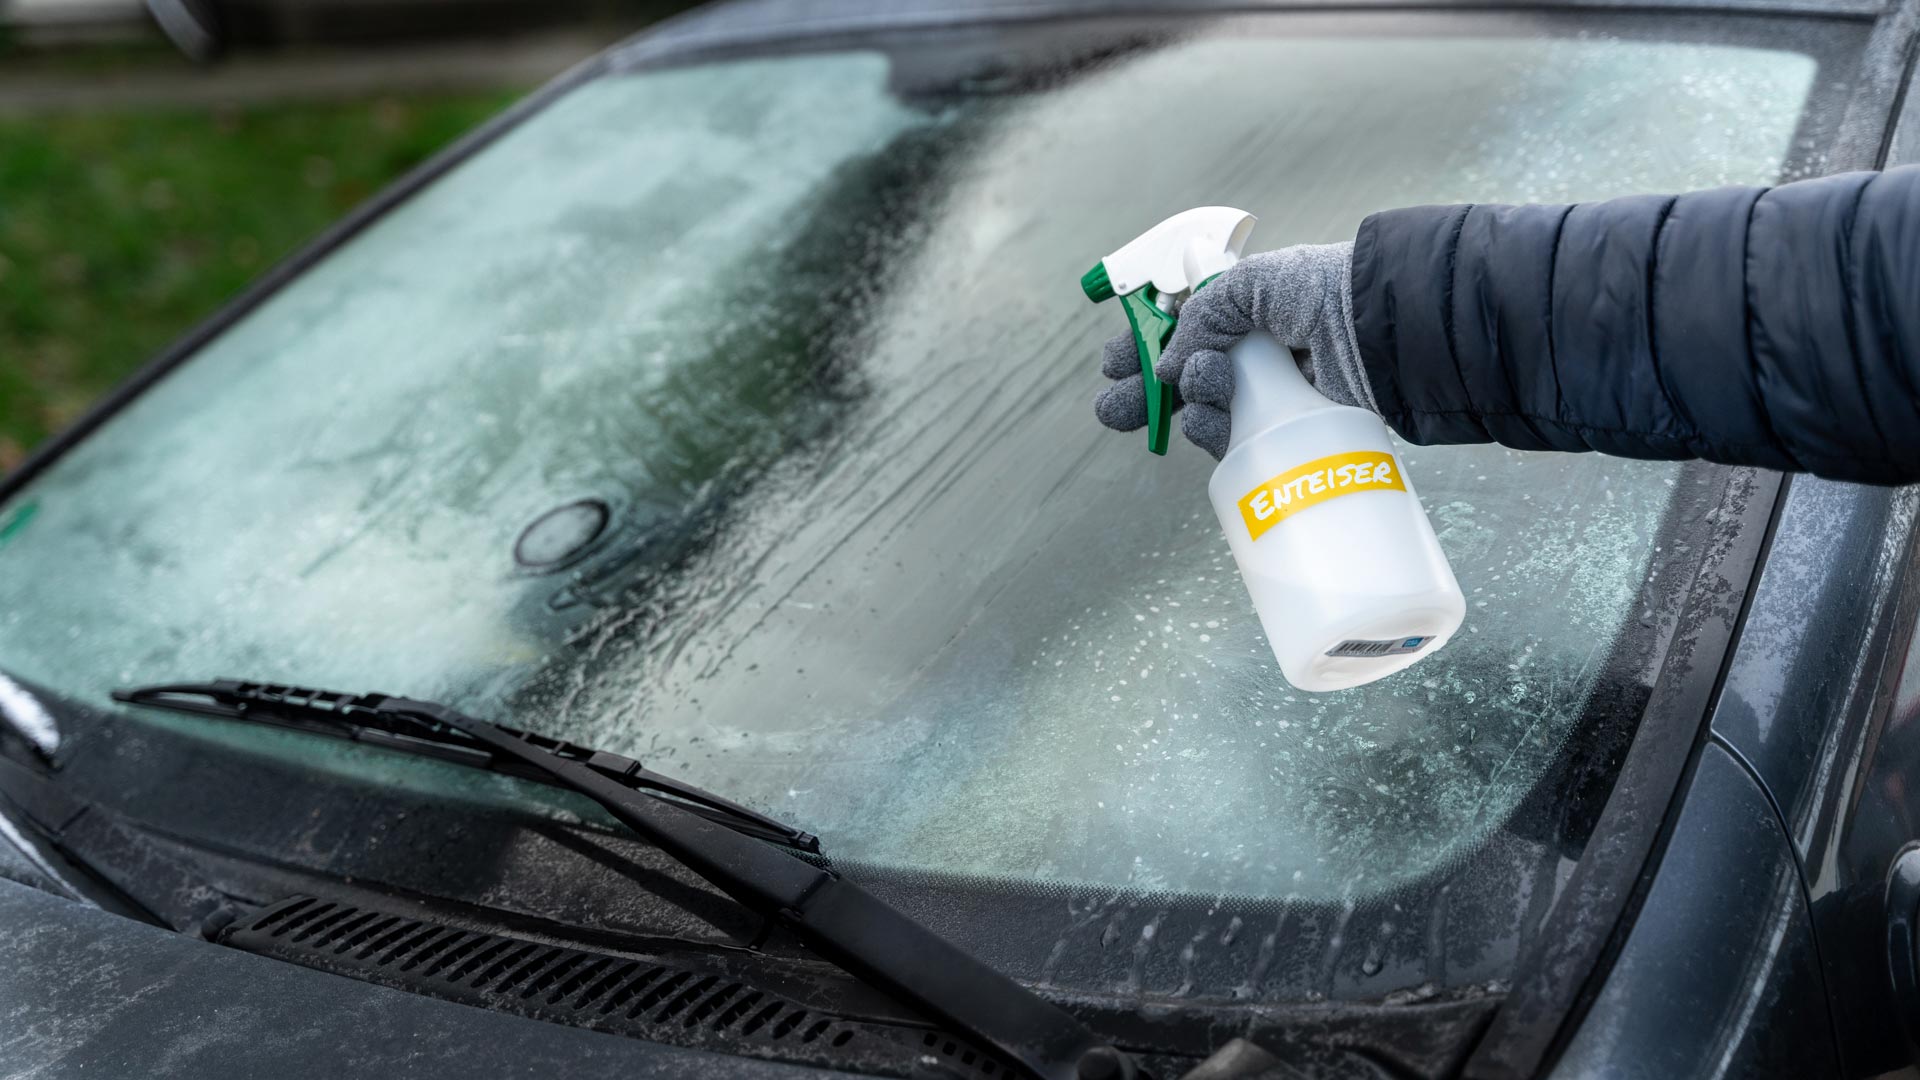 Enteisungs spray für Auto Windschutz scheibe Enteiser Spray Winter